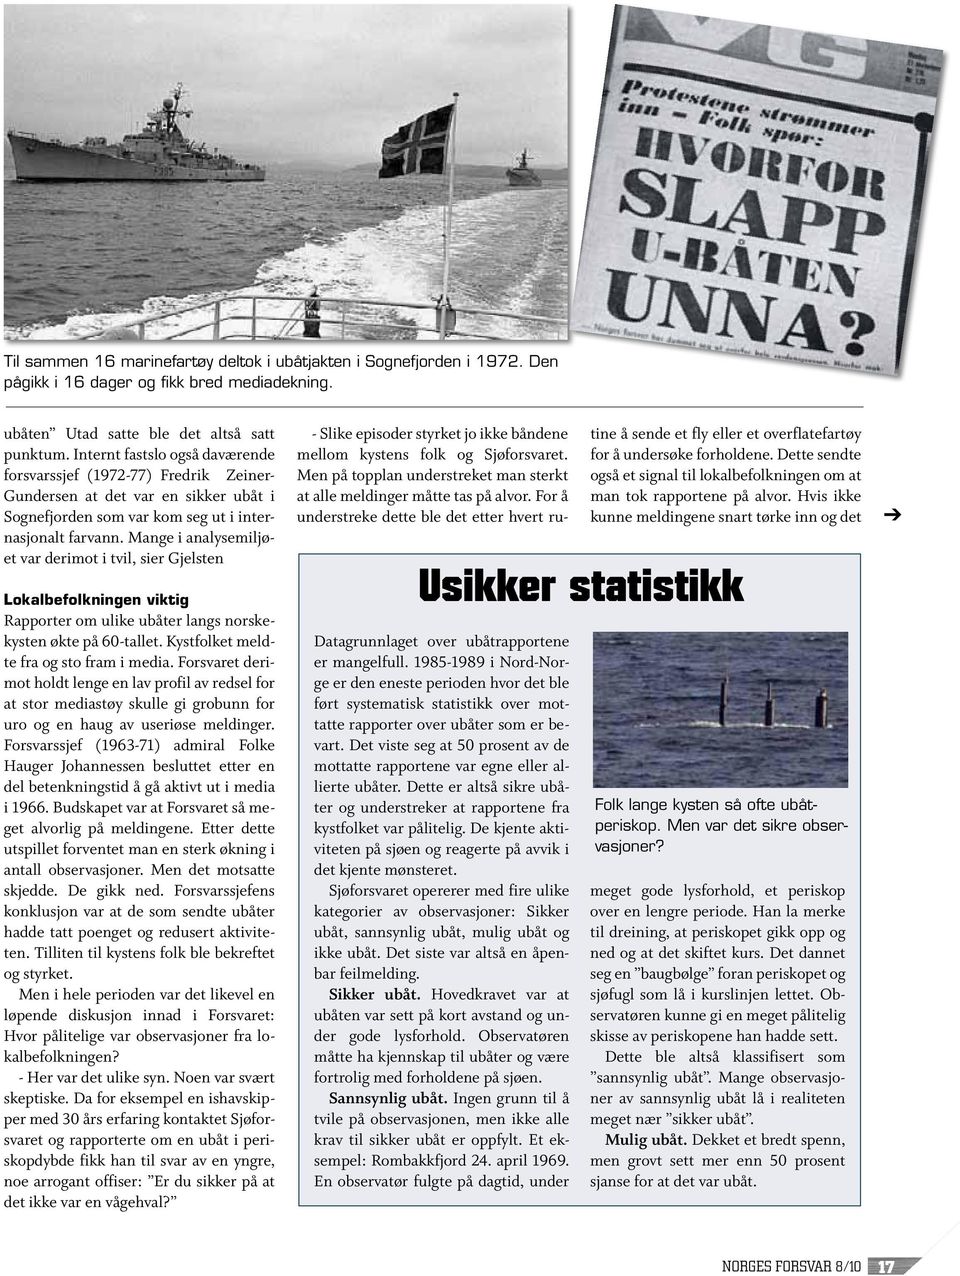 Mange i analysemiljøet var derimot i tvil, sier Gjelsten Lokalbefolkningen viktig Rapporter om ulike ubåter langs norskekysten økte på 60-tallet. Kystfolket meldte fra og sto fram i media.